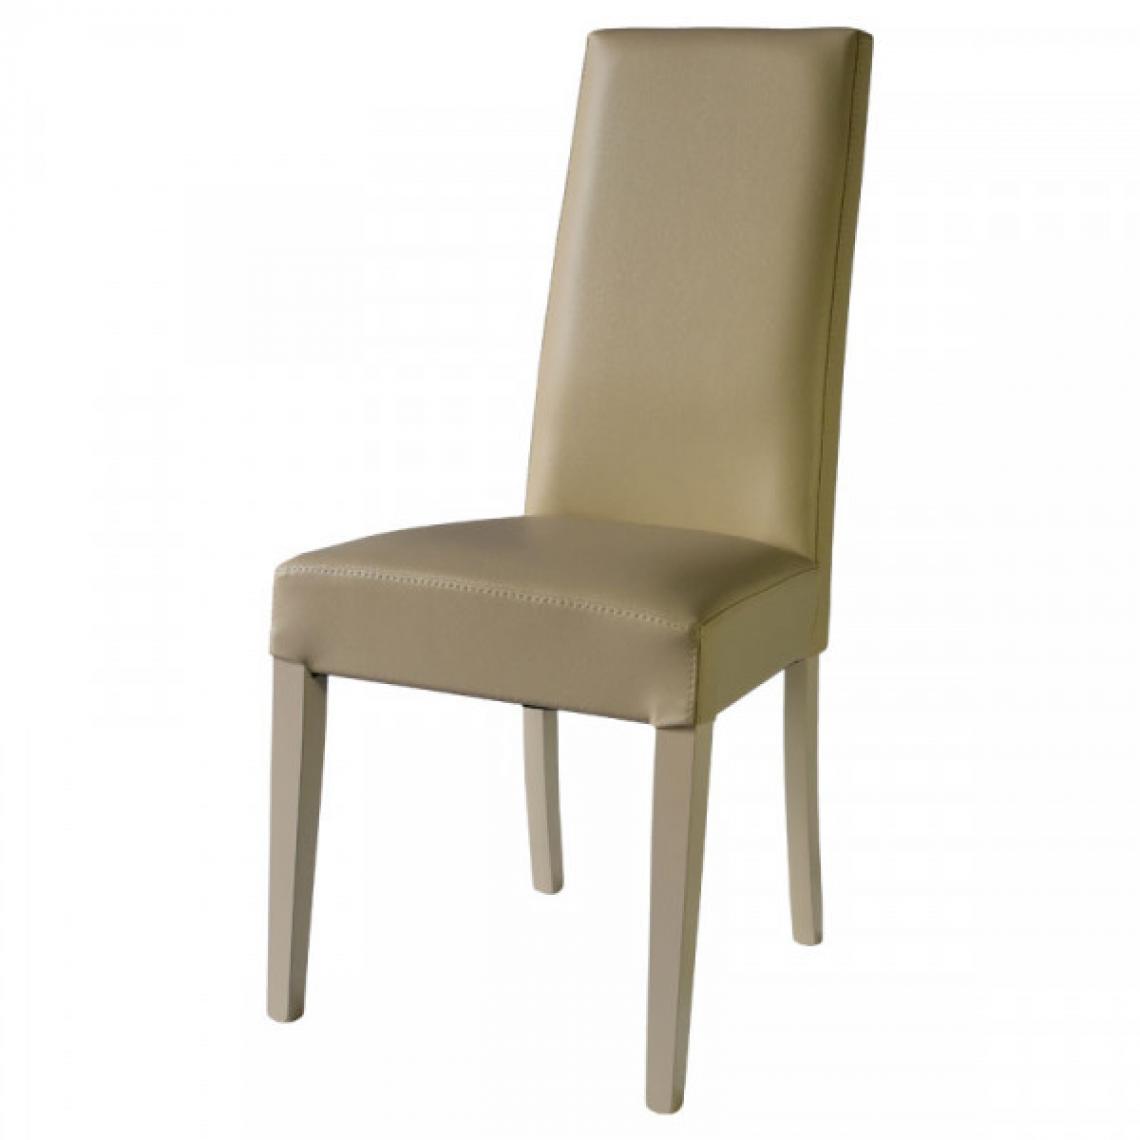 Dansmamaison - Duo de chaises en similicuir Beige - VENISE - L 54 x l 46 x H 99 cm - Chaises